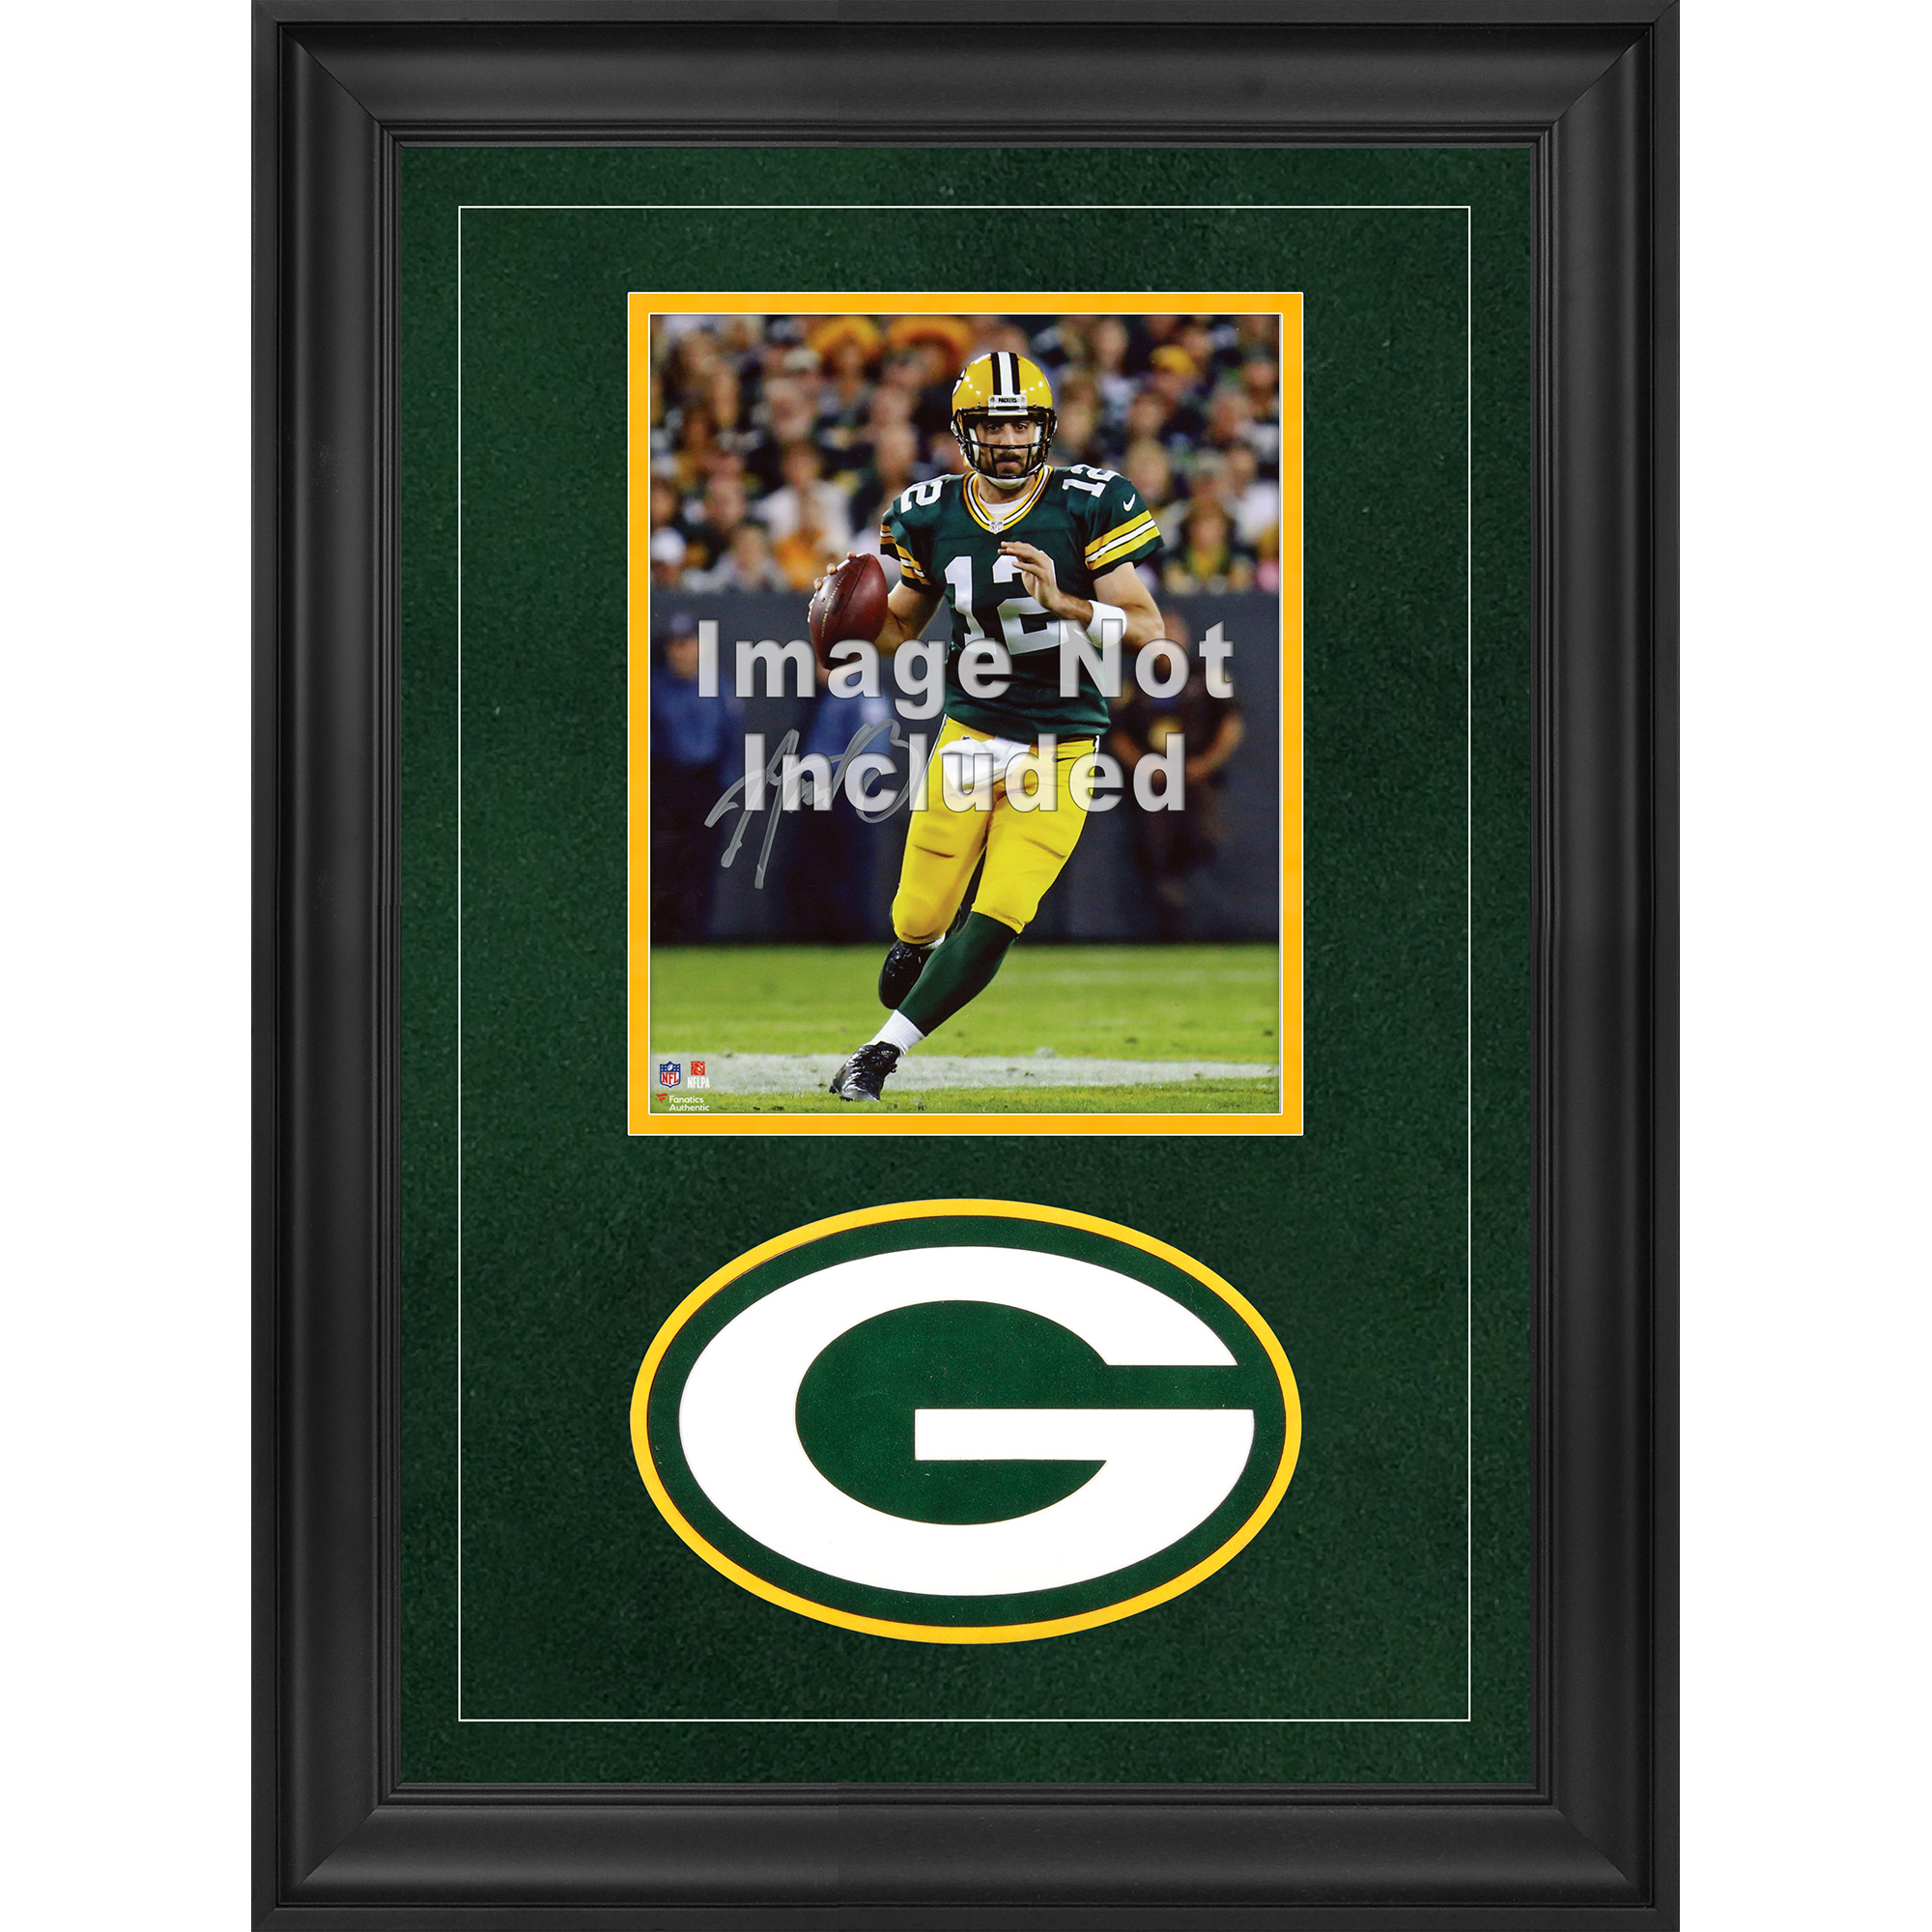 Green Bay Packers Deluxe-Fotorahmen im Hochformat, 20,3 x 25,4 cm, mit Team-Logo